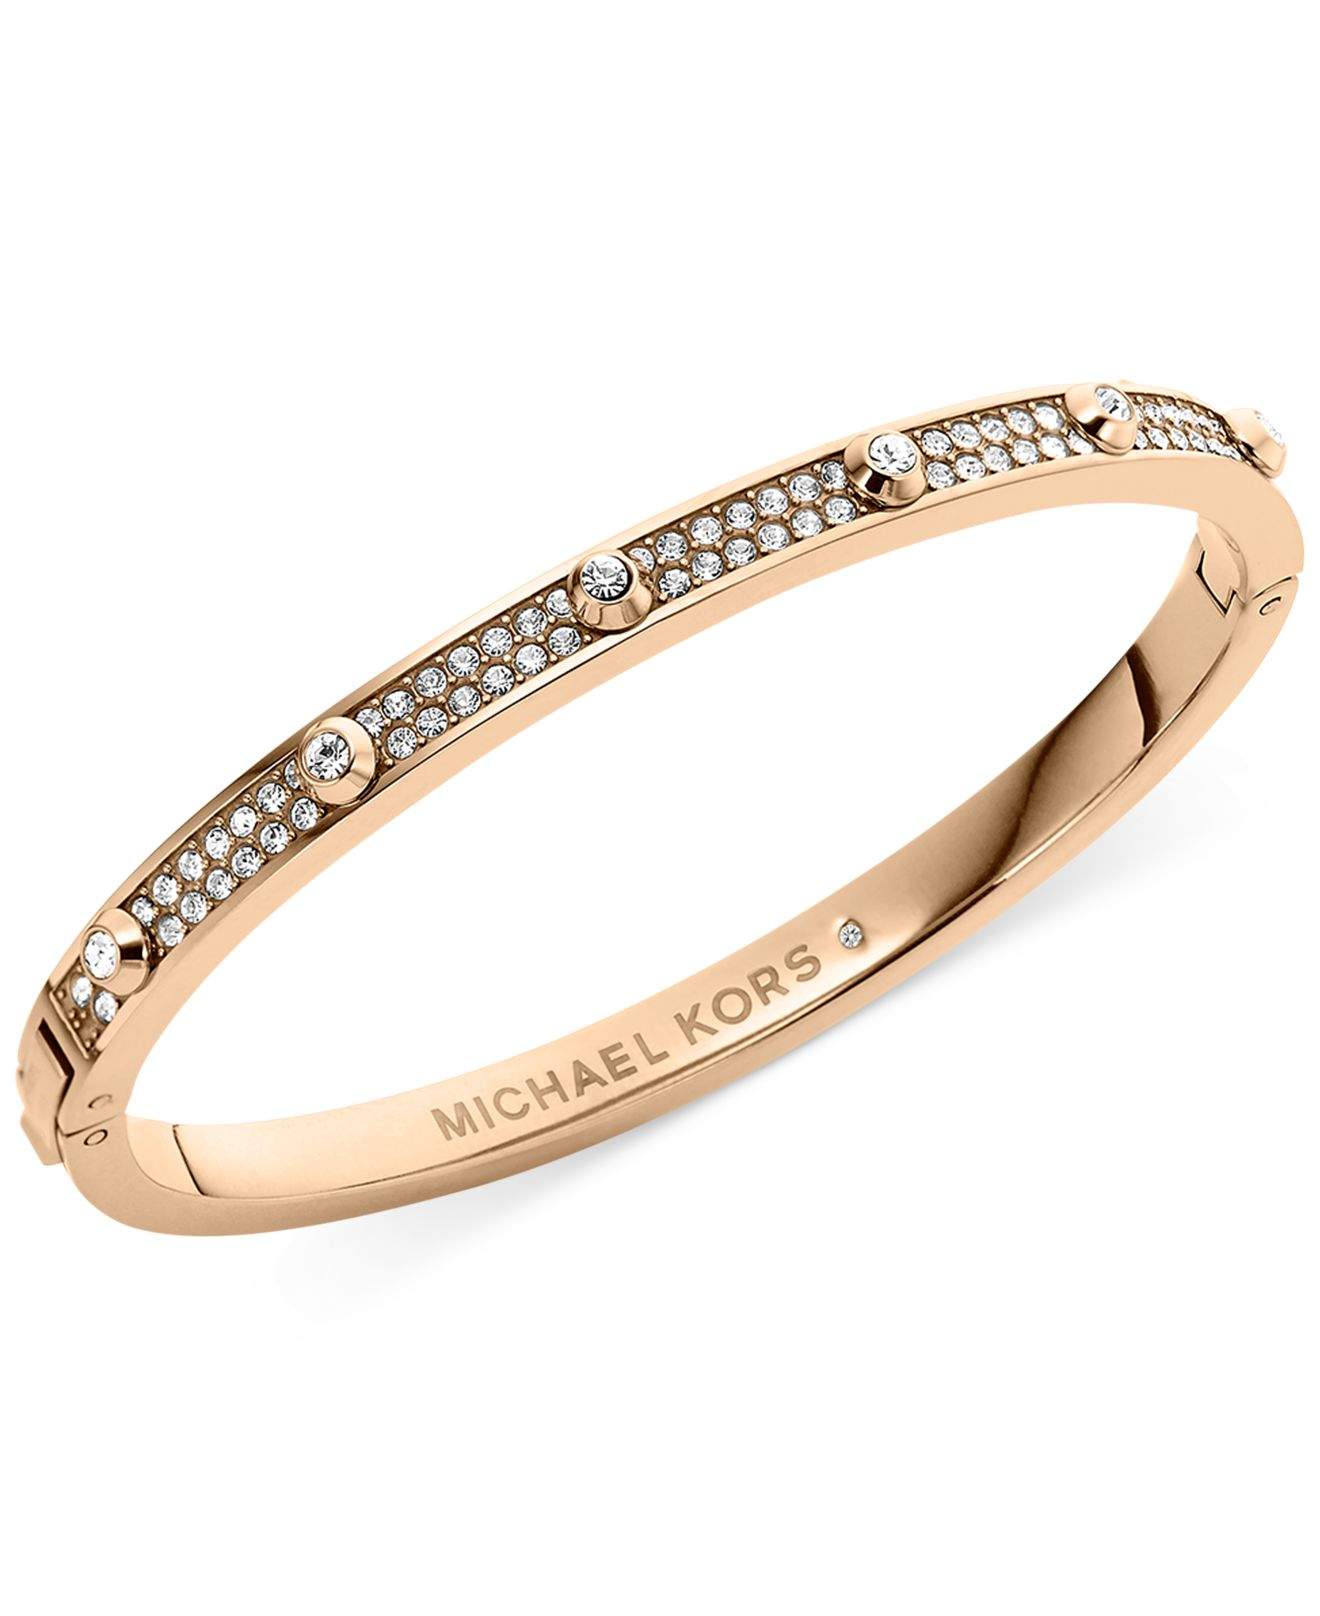 Michael-kors-rose-gold-bracelet